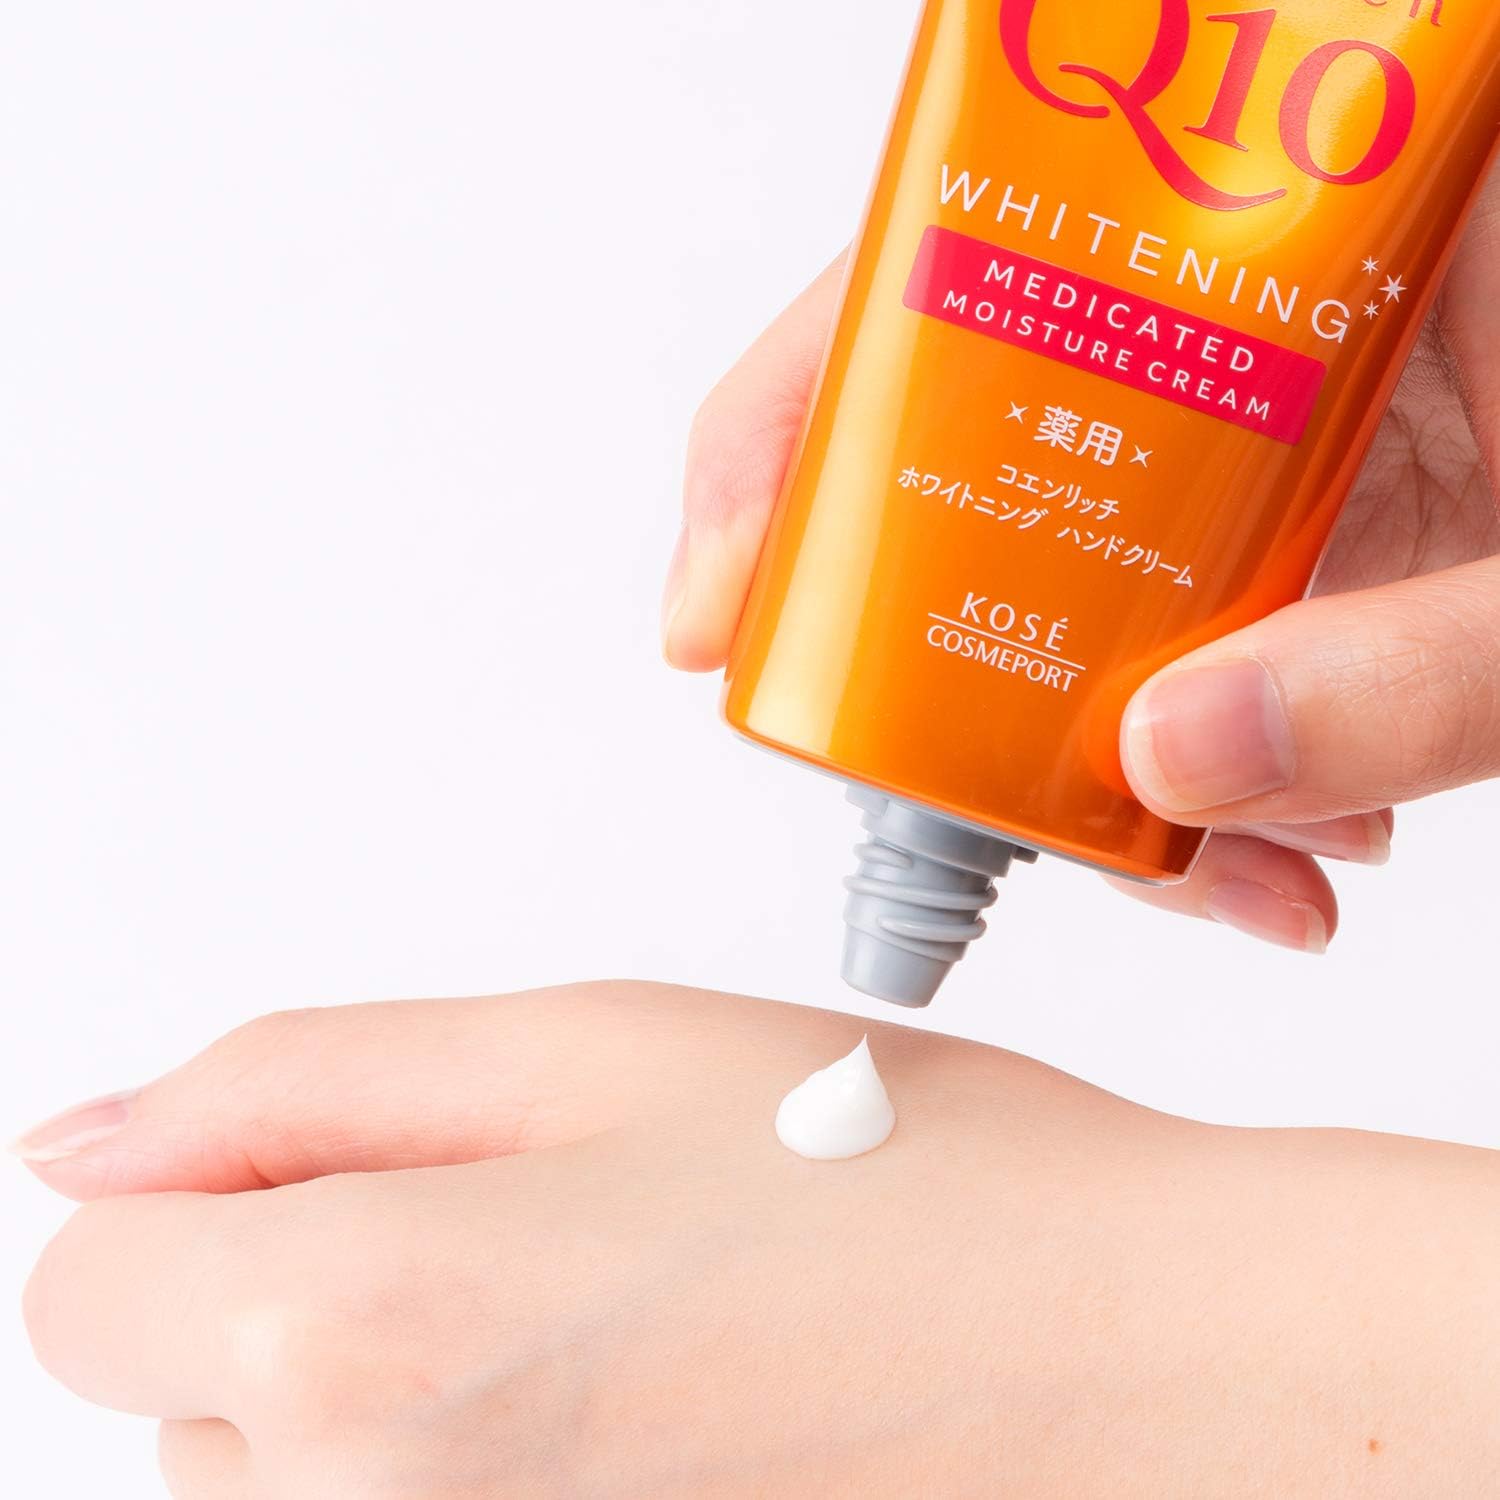 Kose Coen Rich Q10 Medicated Hand Cream 80g - Beauty White - NihonMura